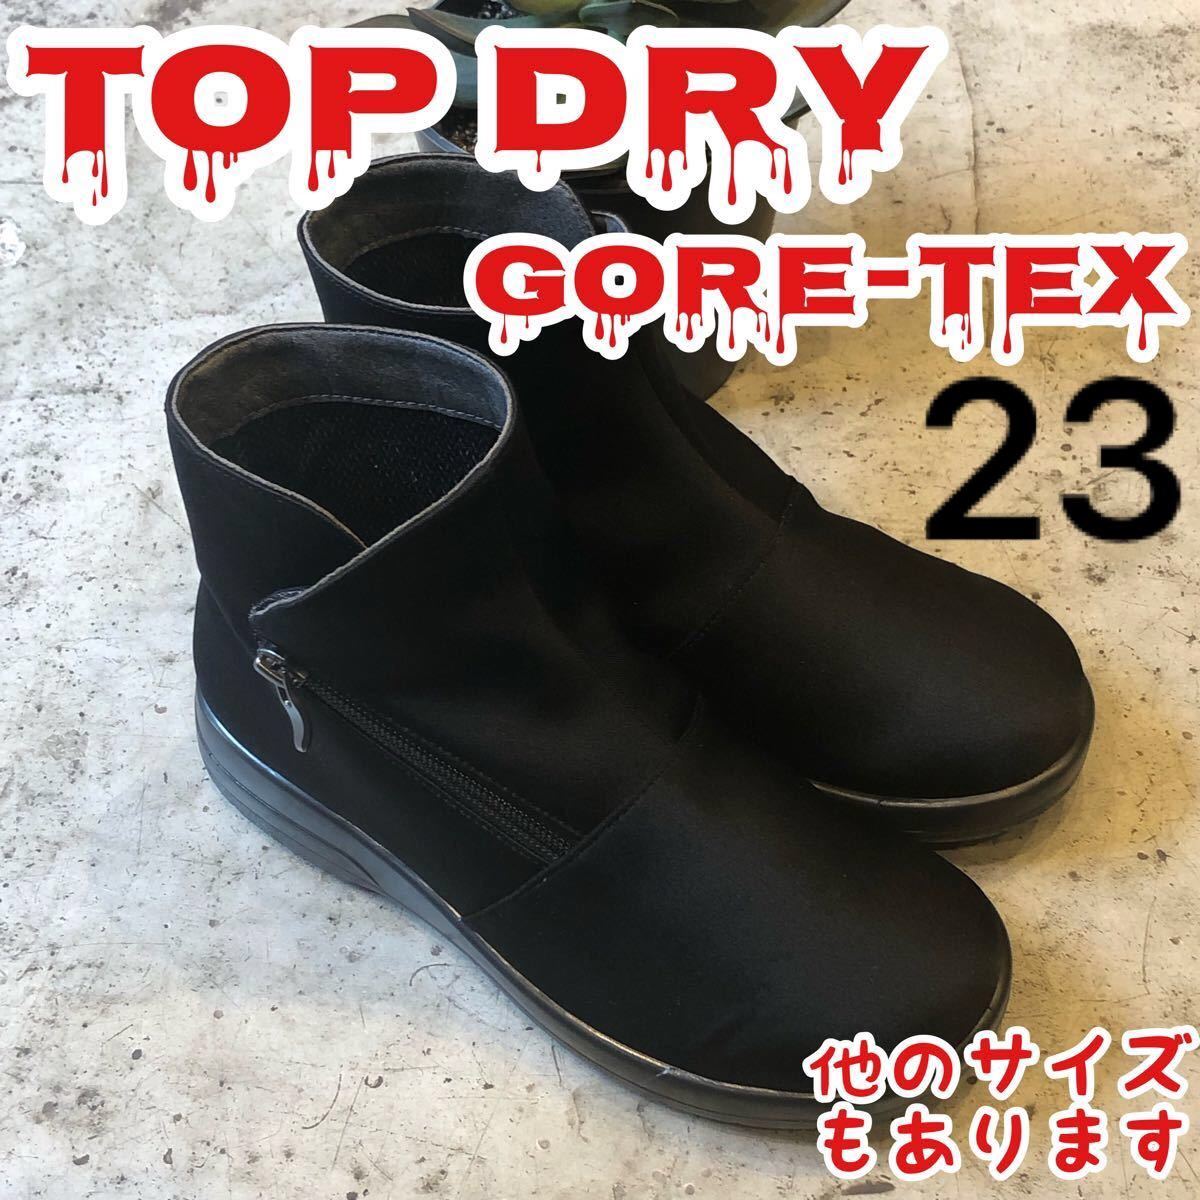 TOPDRY トップドライ GORETEX ゴアテックス 防水 防滑 レインブーツ 黒